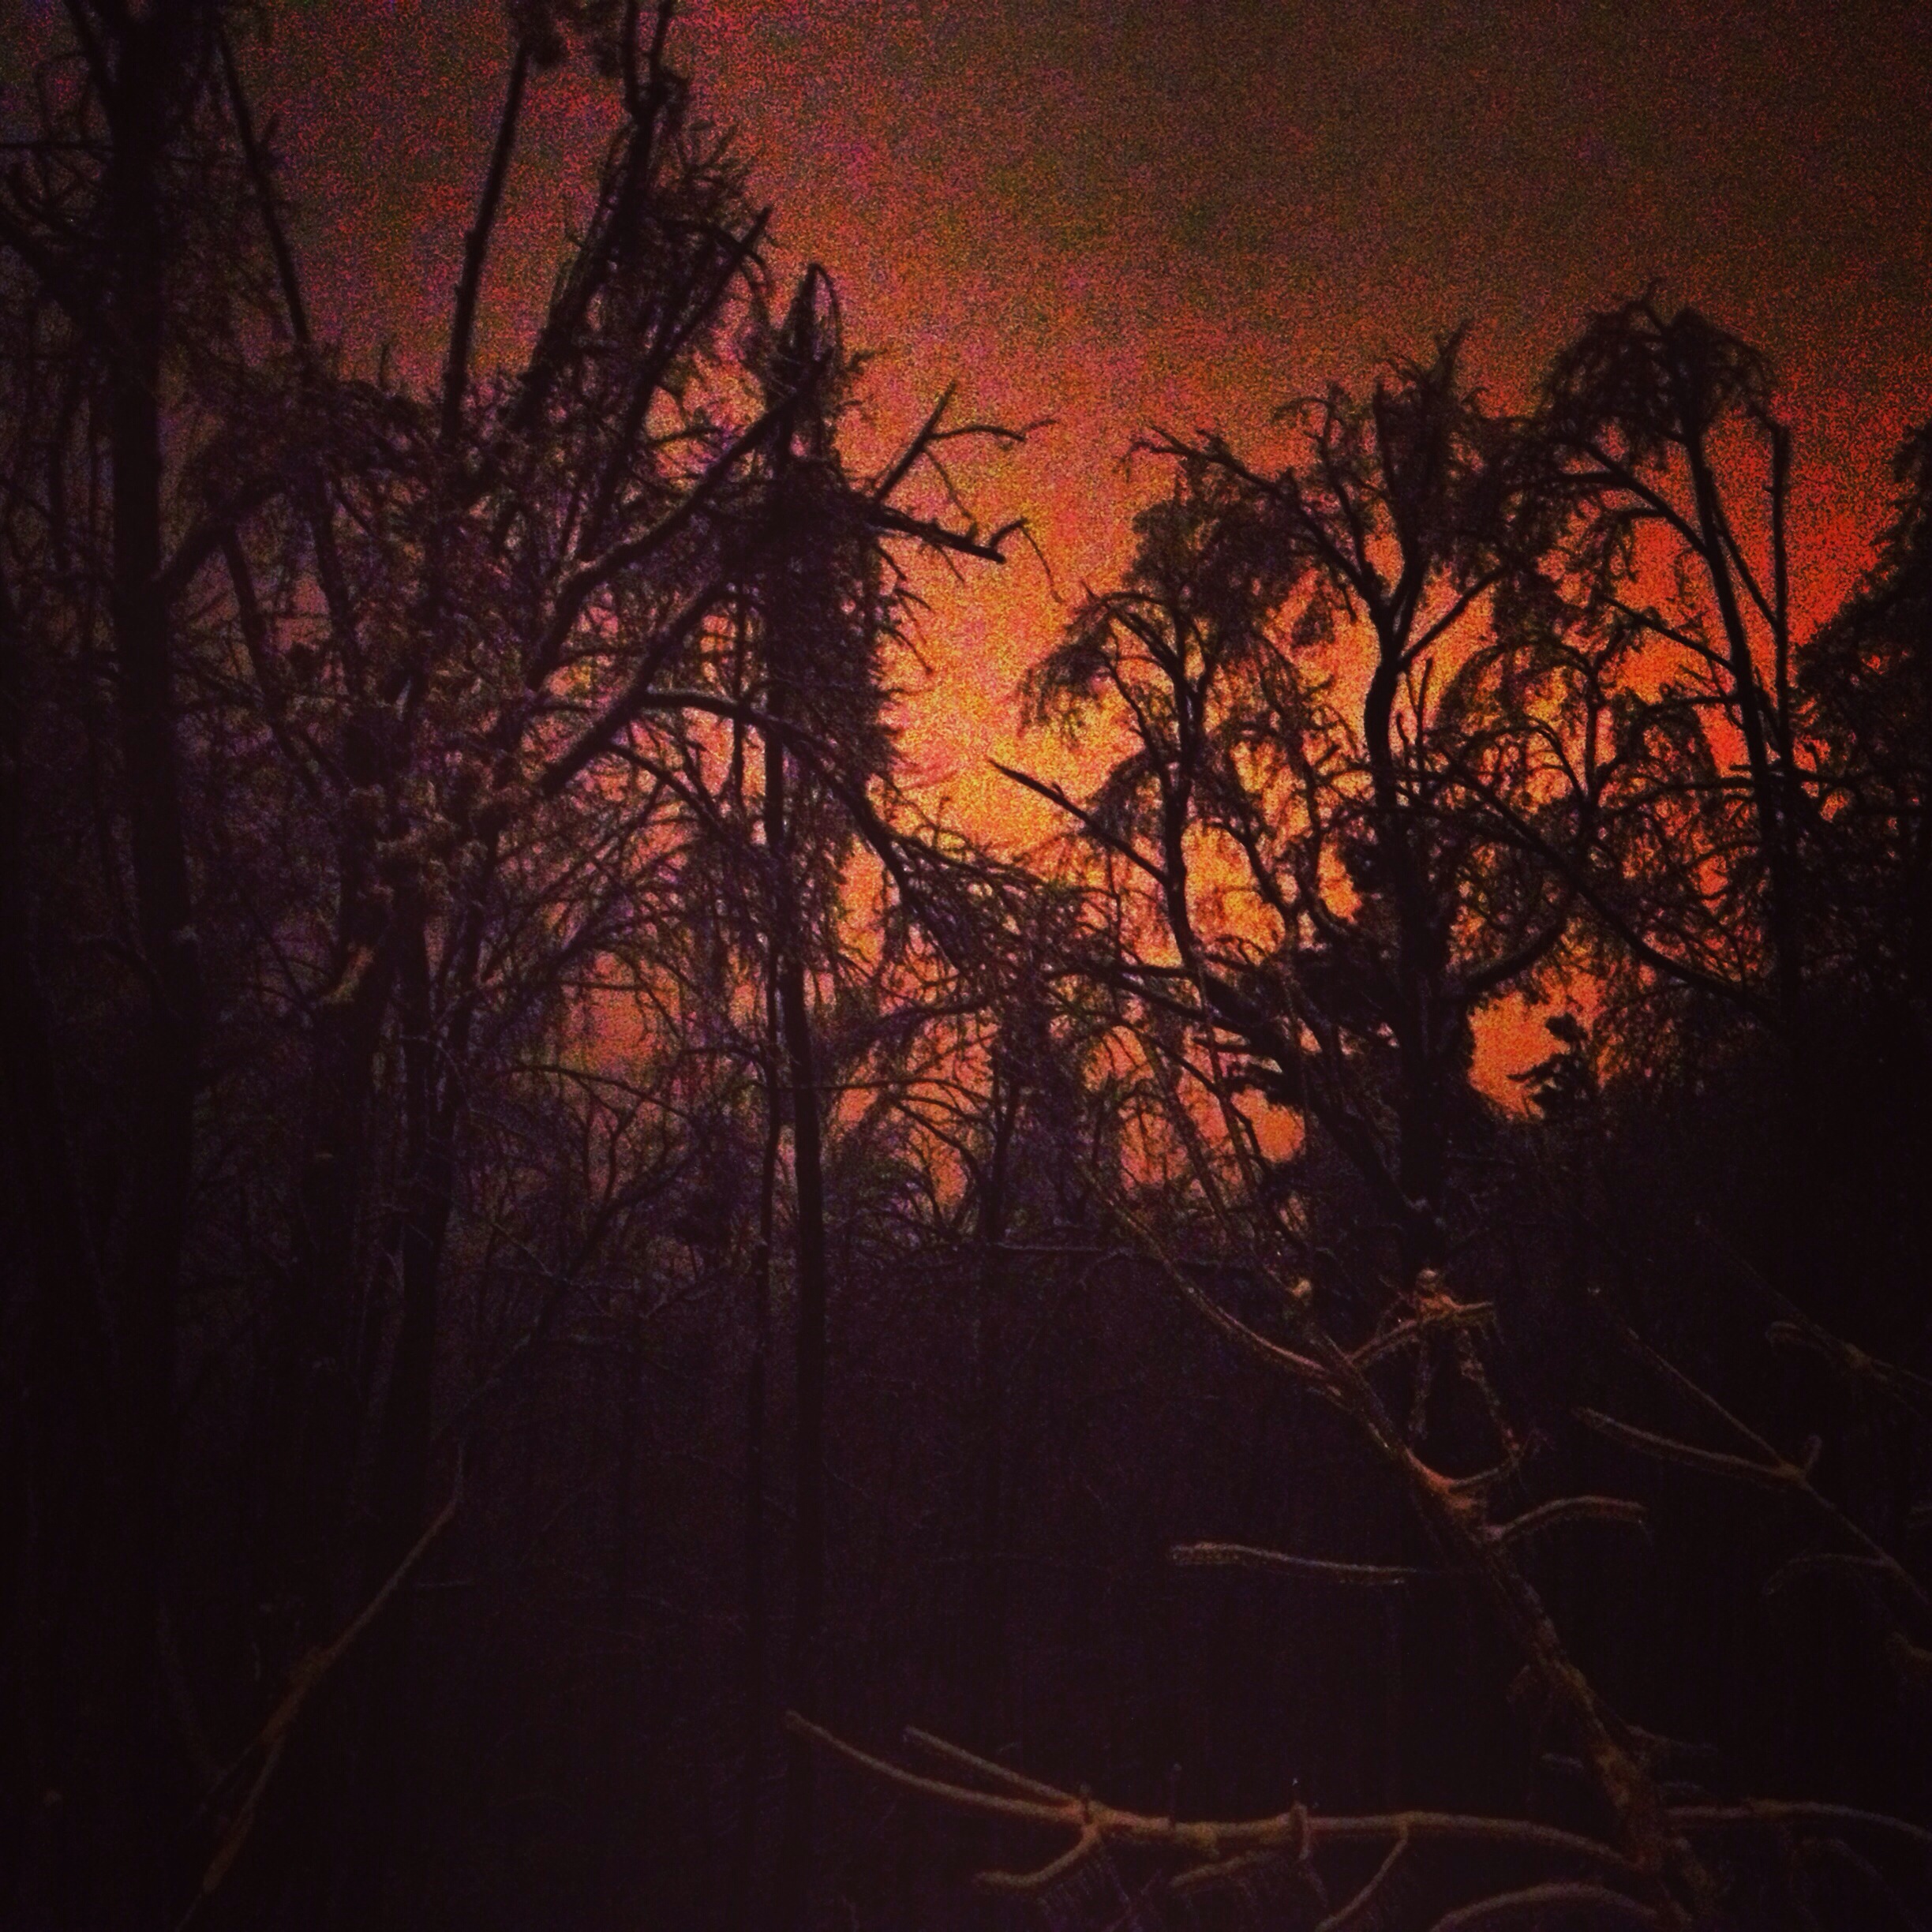 Ice-covered trees in dark orange glow